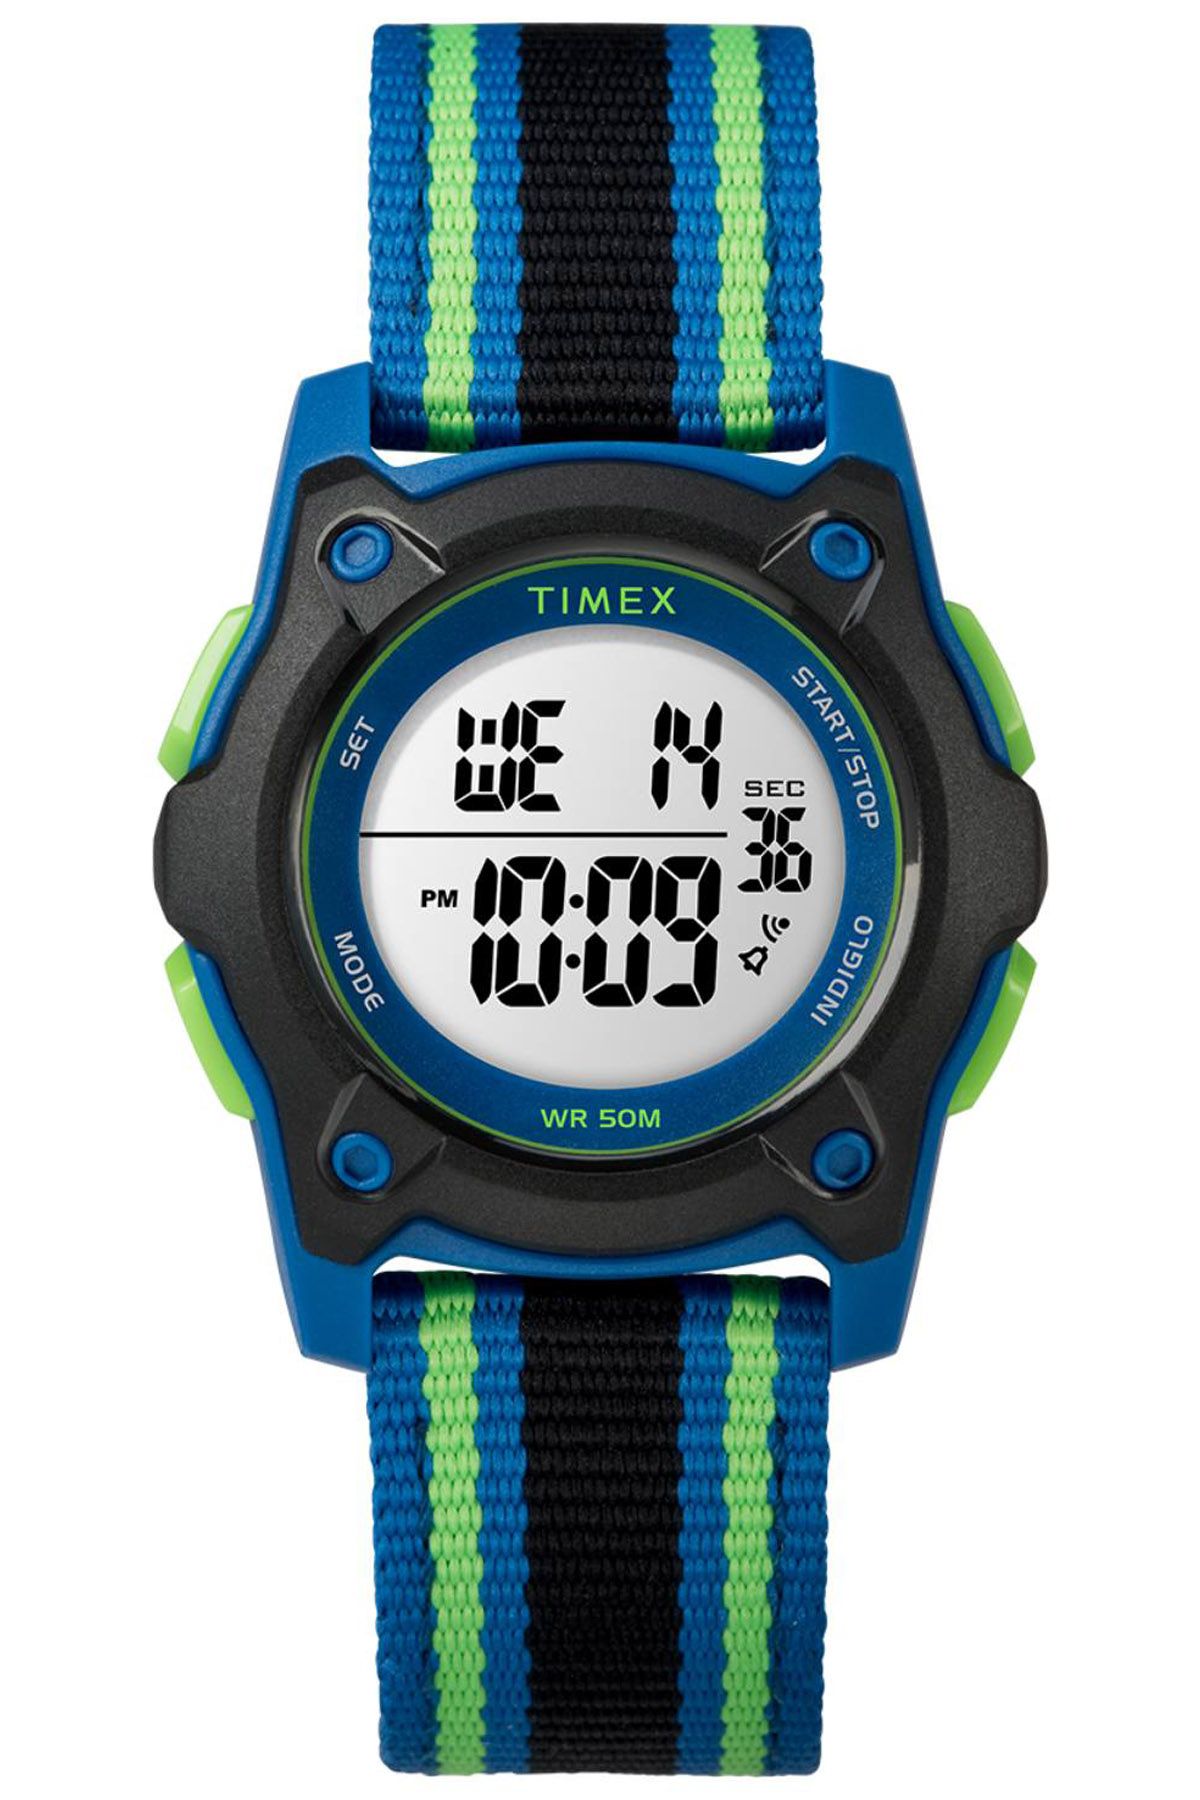 TIMEX Timex Tw7C26000 Digital Watches